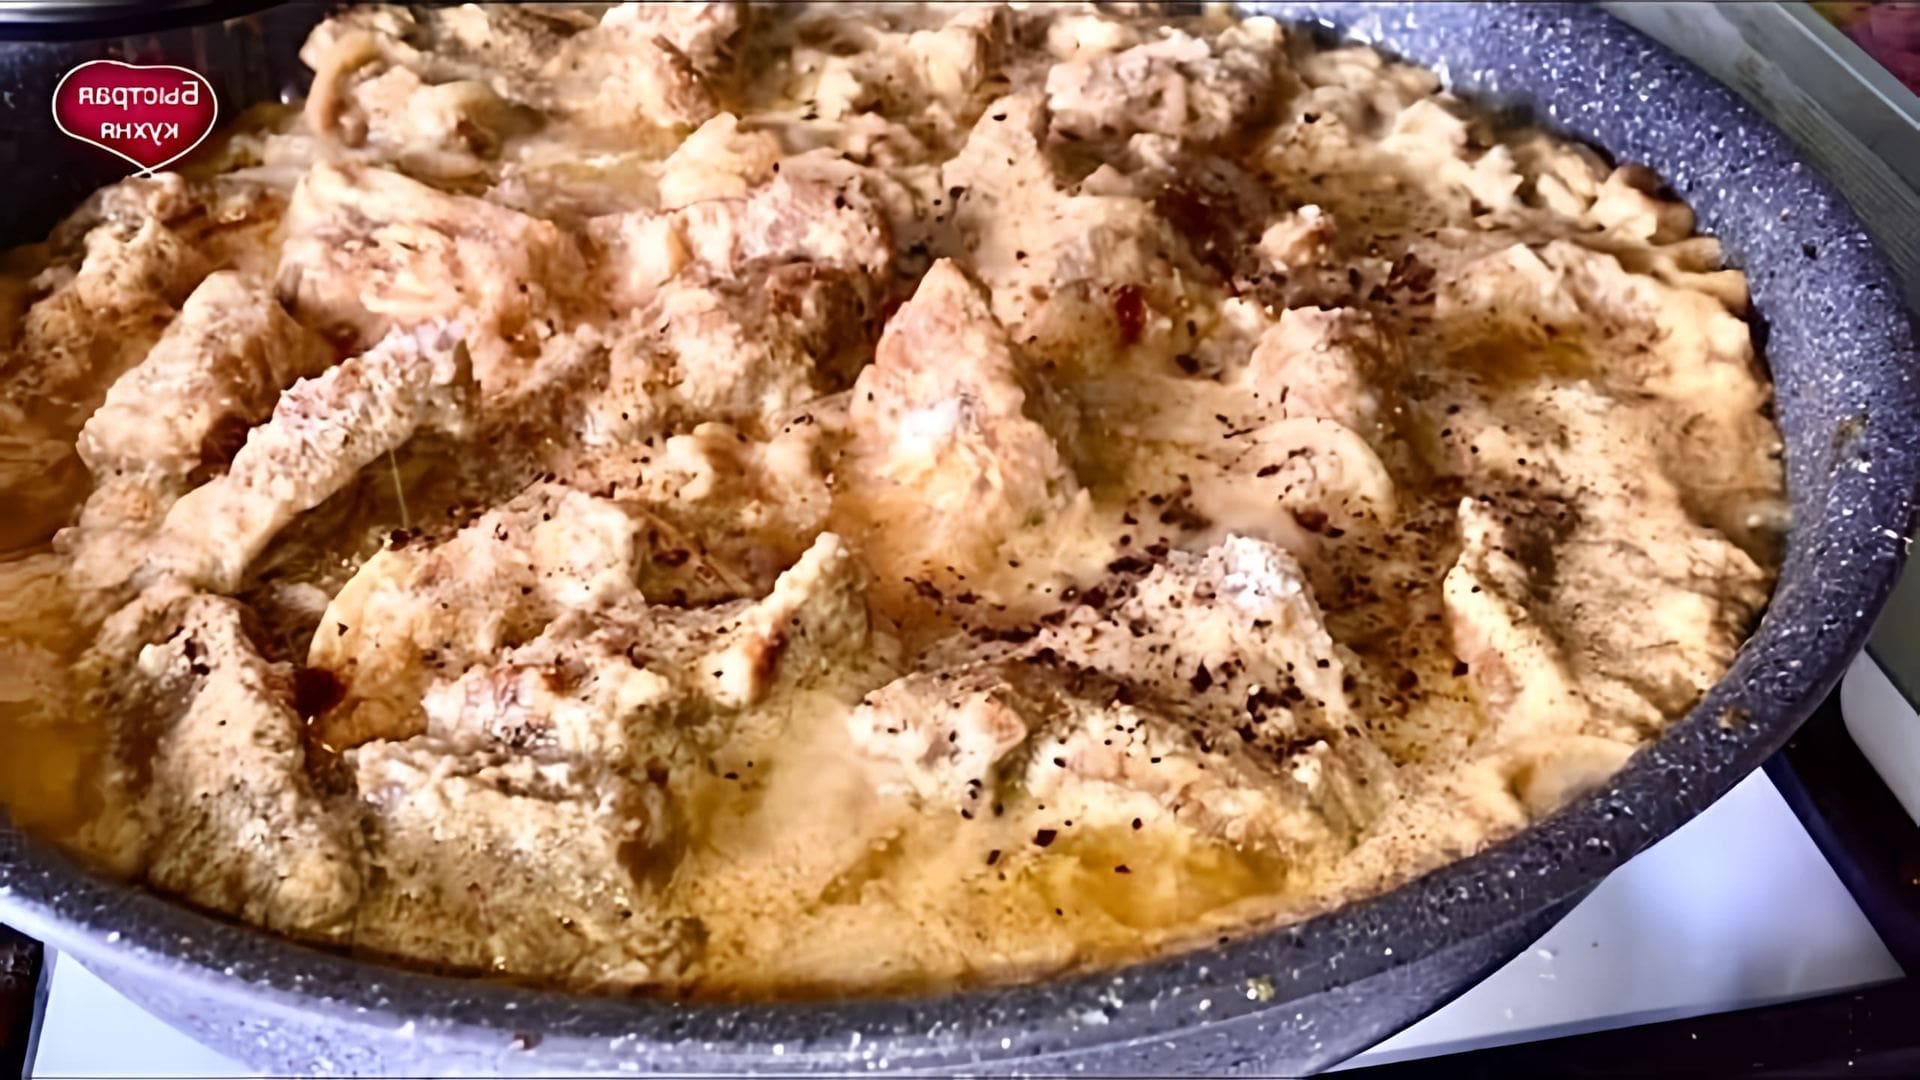 В этом видео демонстрируется процесс приготовления классического блюда - печени по-строгановски